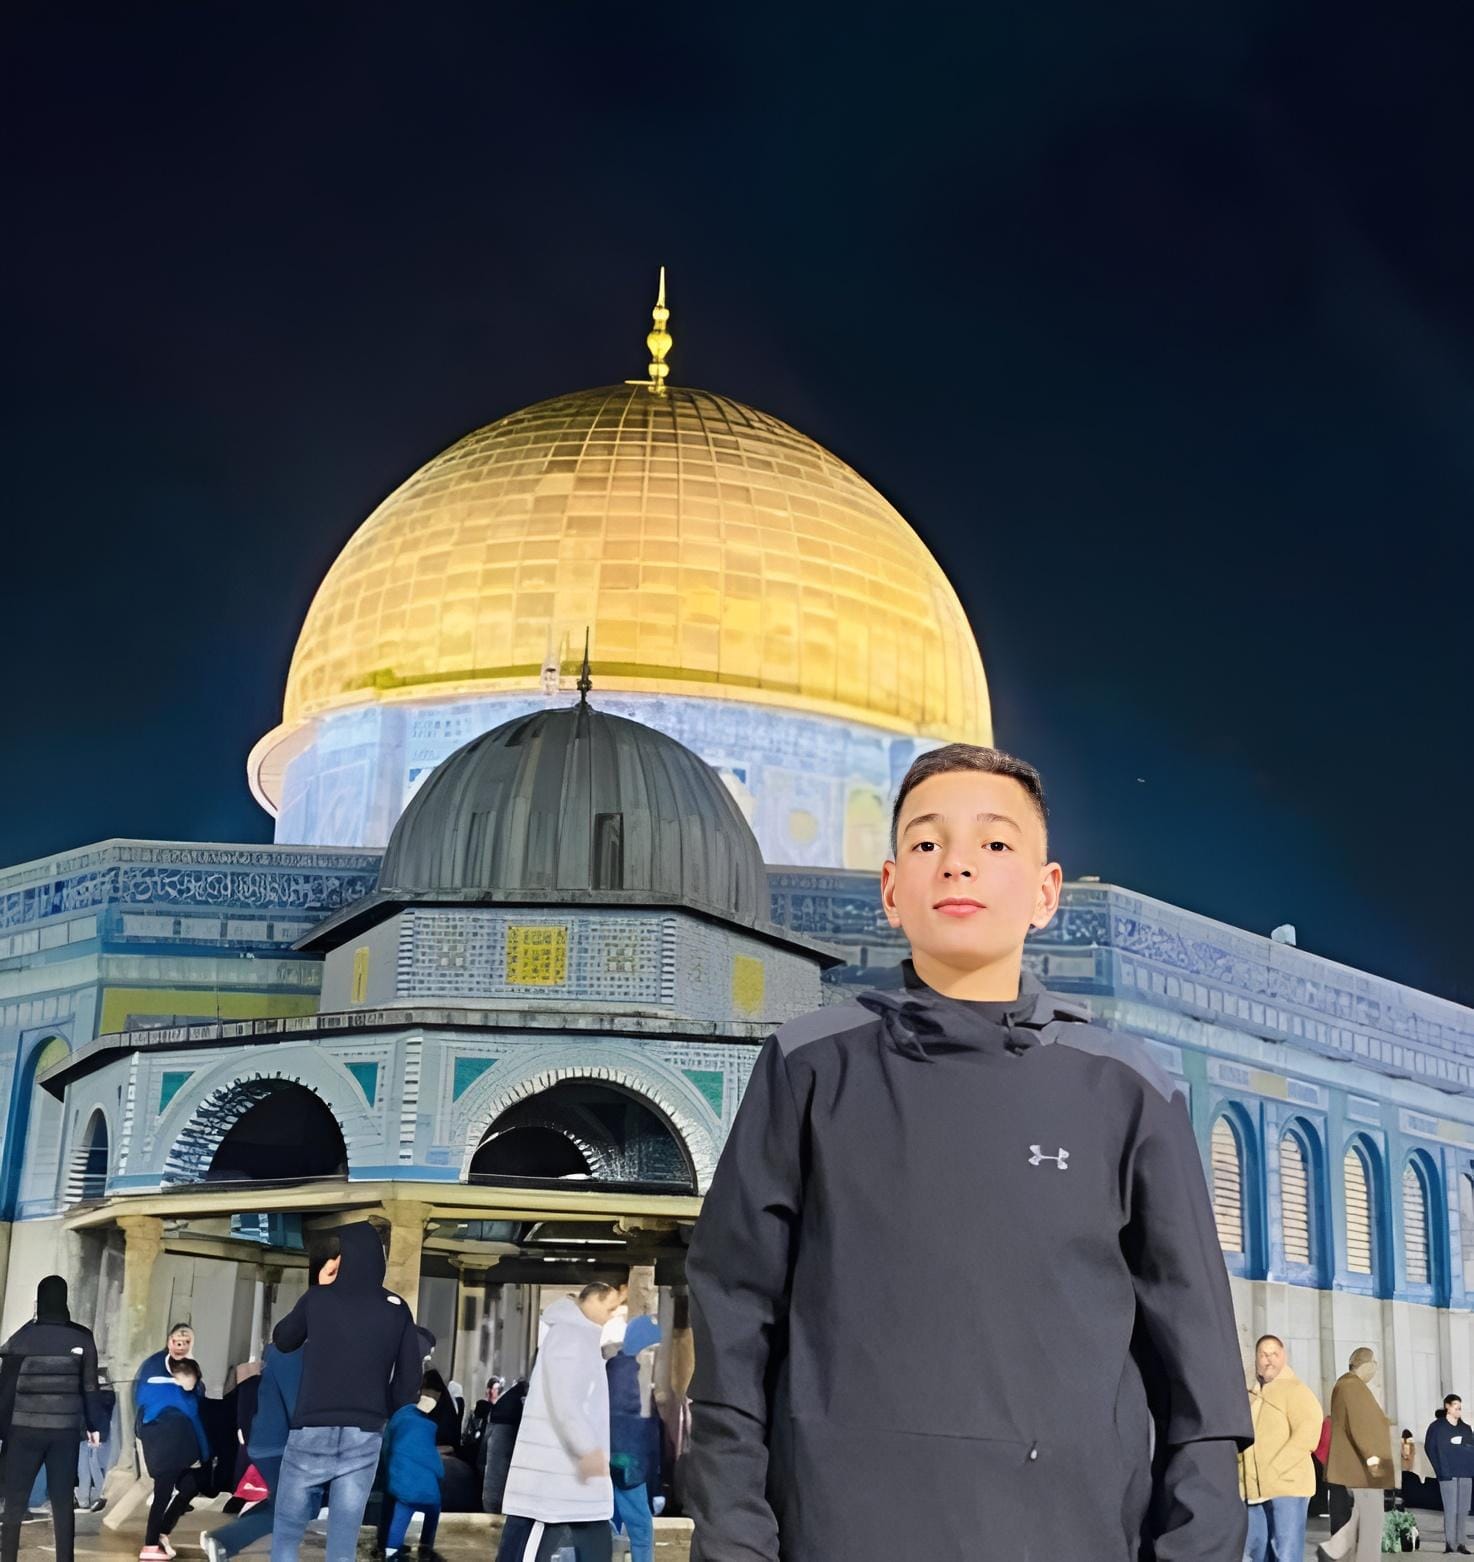 الطفل فارس شرحبيل أبو سمرة (14 عاما)